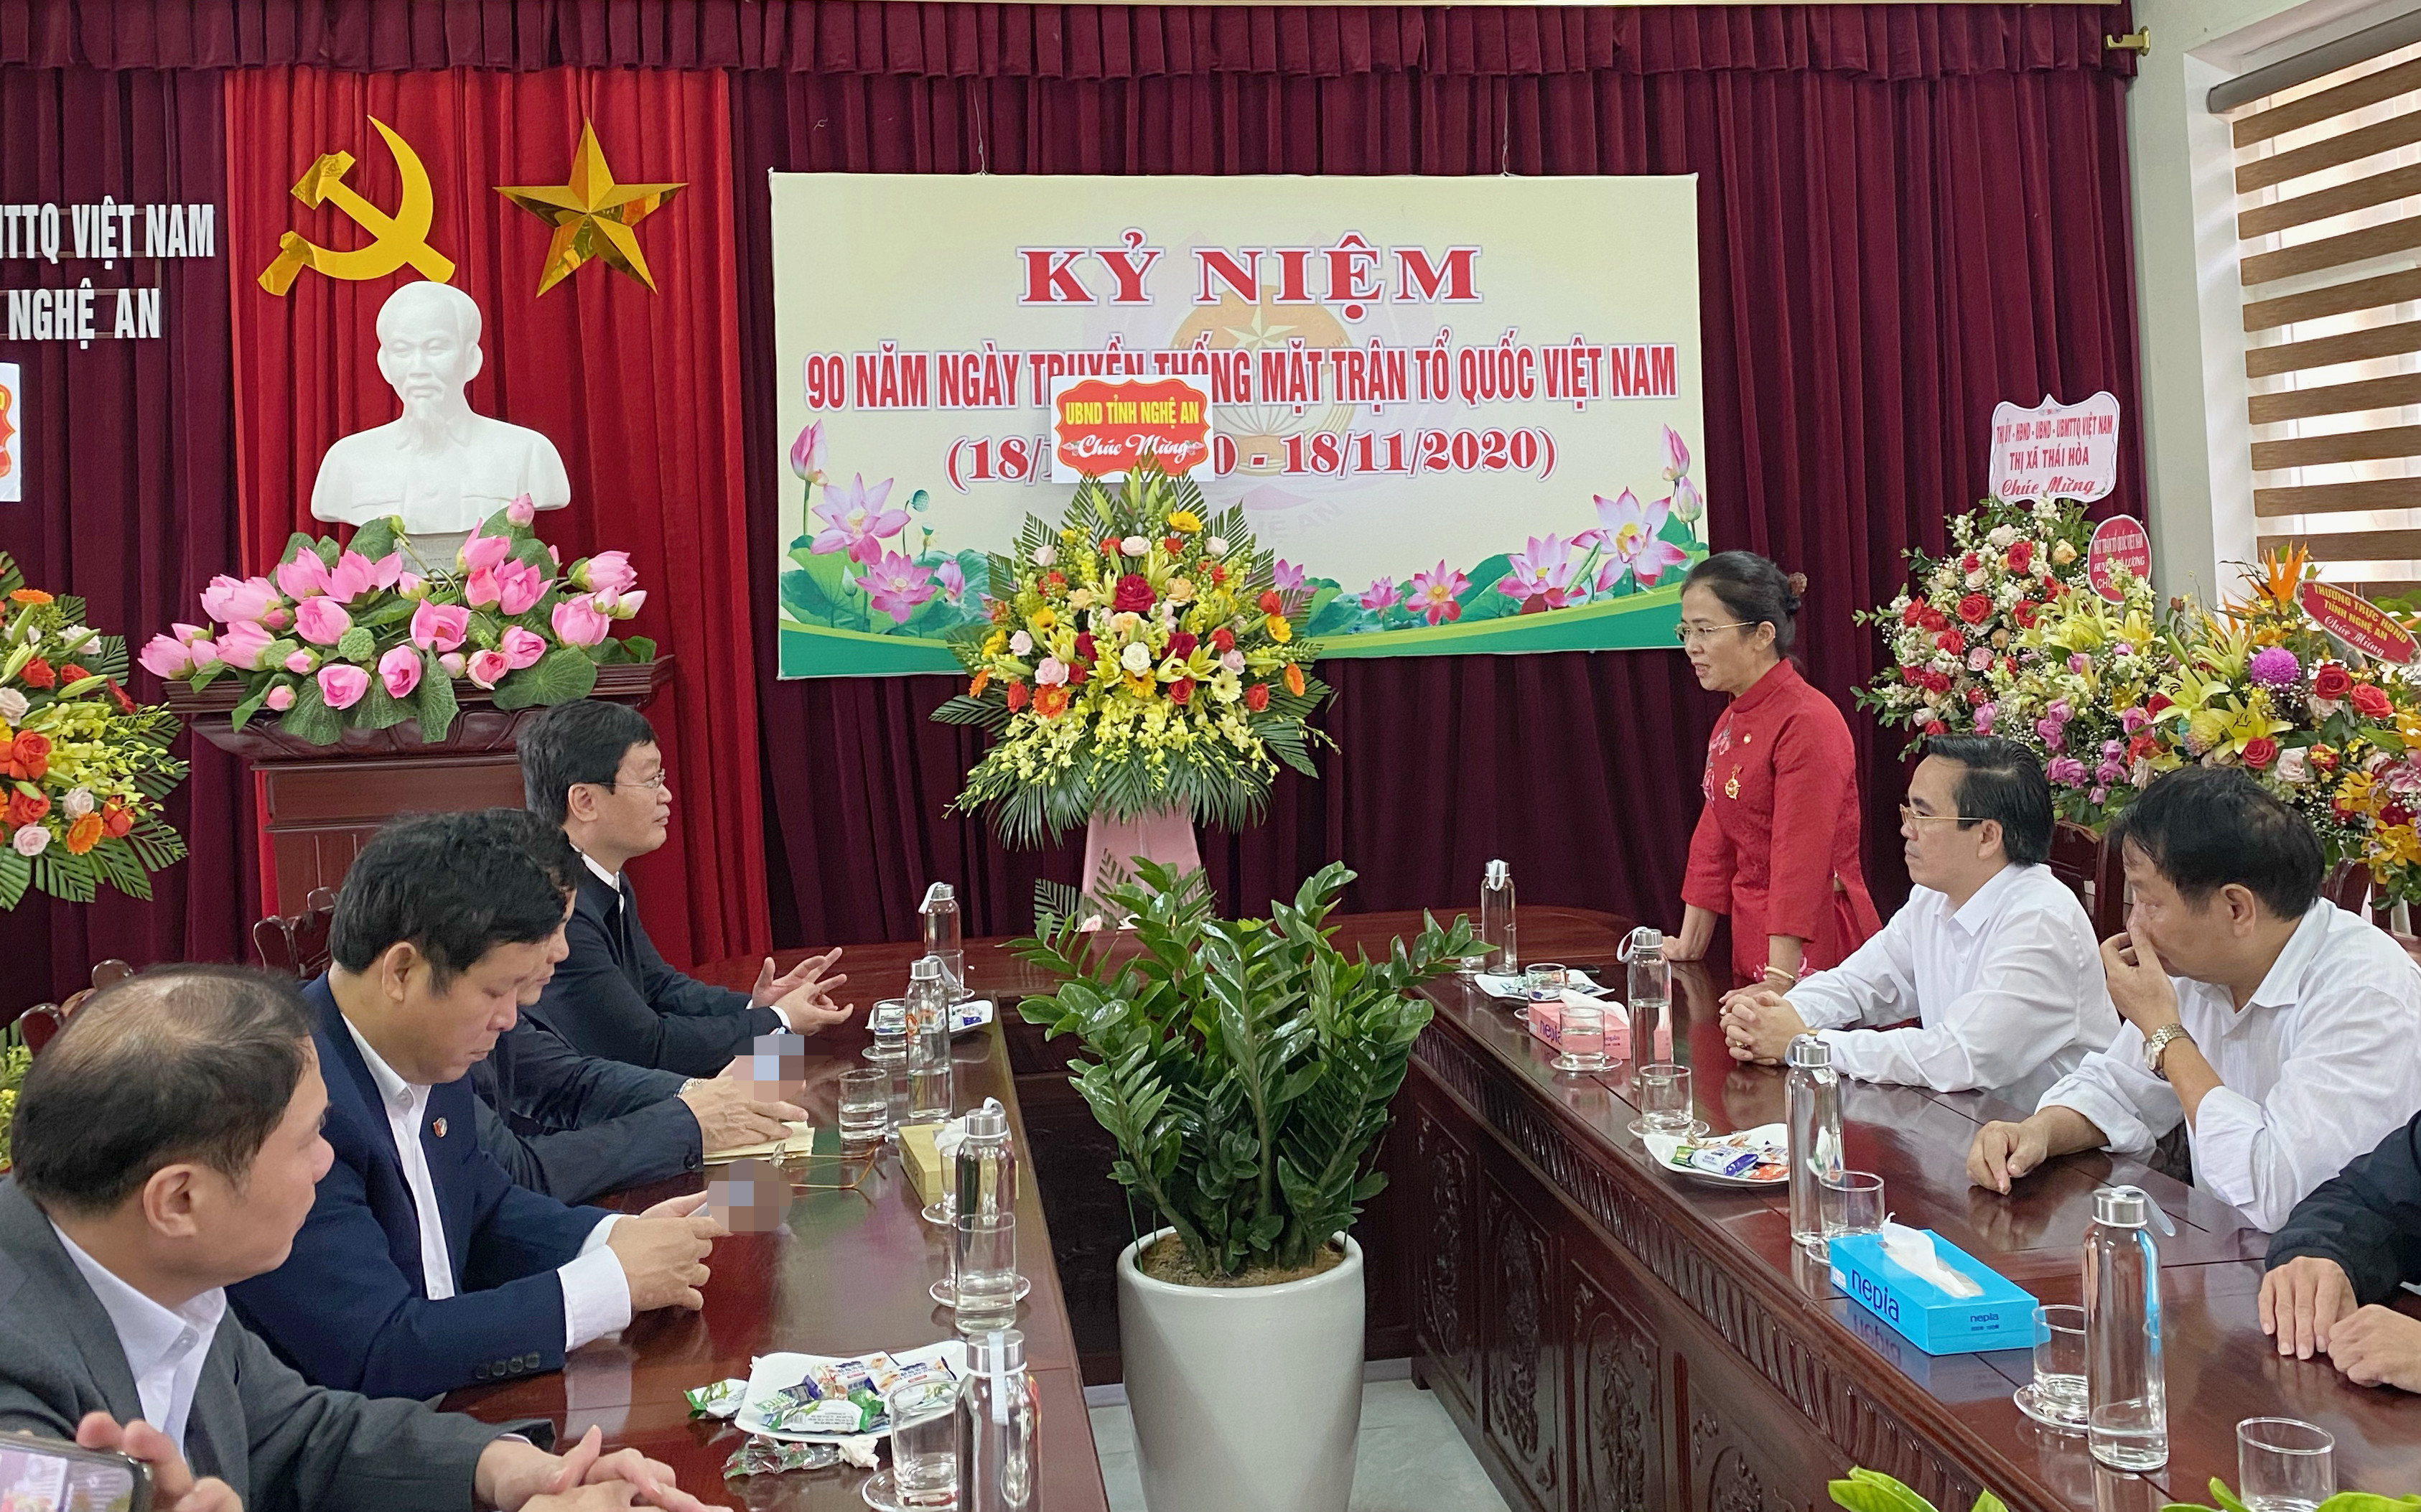 Đồng chí Võ Thị Minh Sinh - Chủ tịch Ủy ban MTTQ tỉnh cảm ơn sự quan tâm của lãnh đạo UBND tỉnh đến công tác mặt trận trong thời gian qua. Ảnh: Phạm Bằng